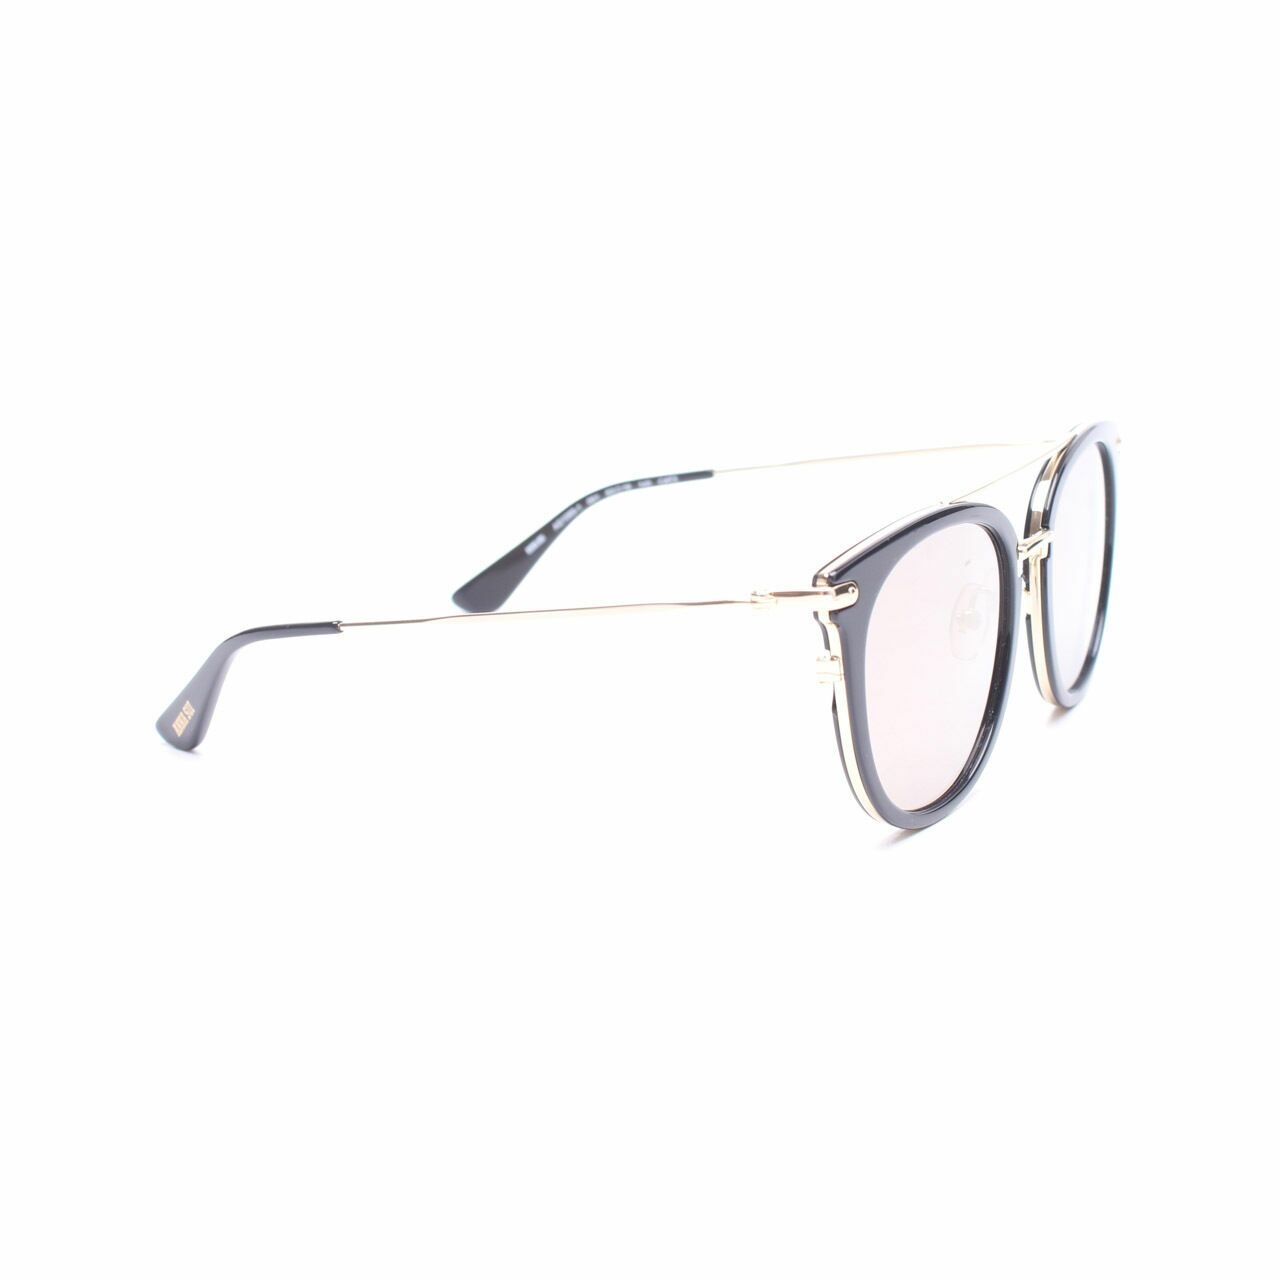 Anna Sui Black Sunglasses